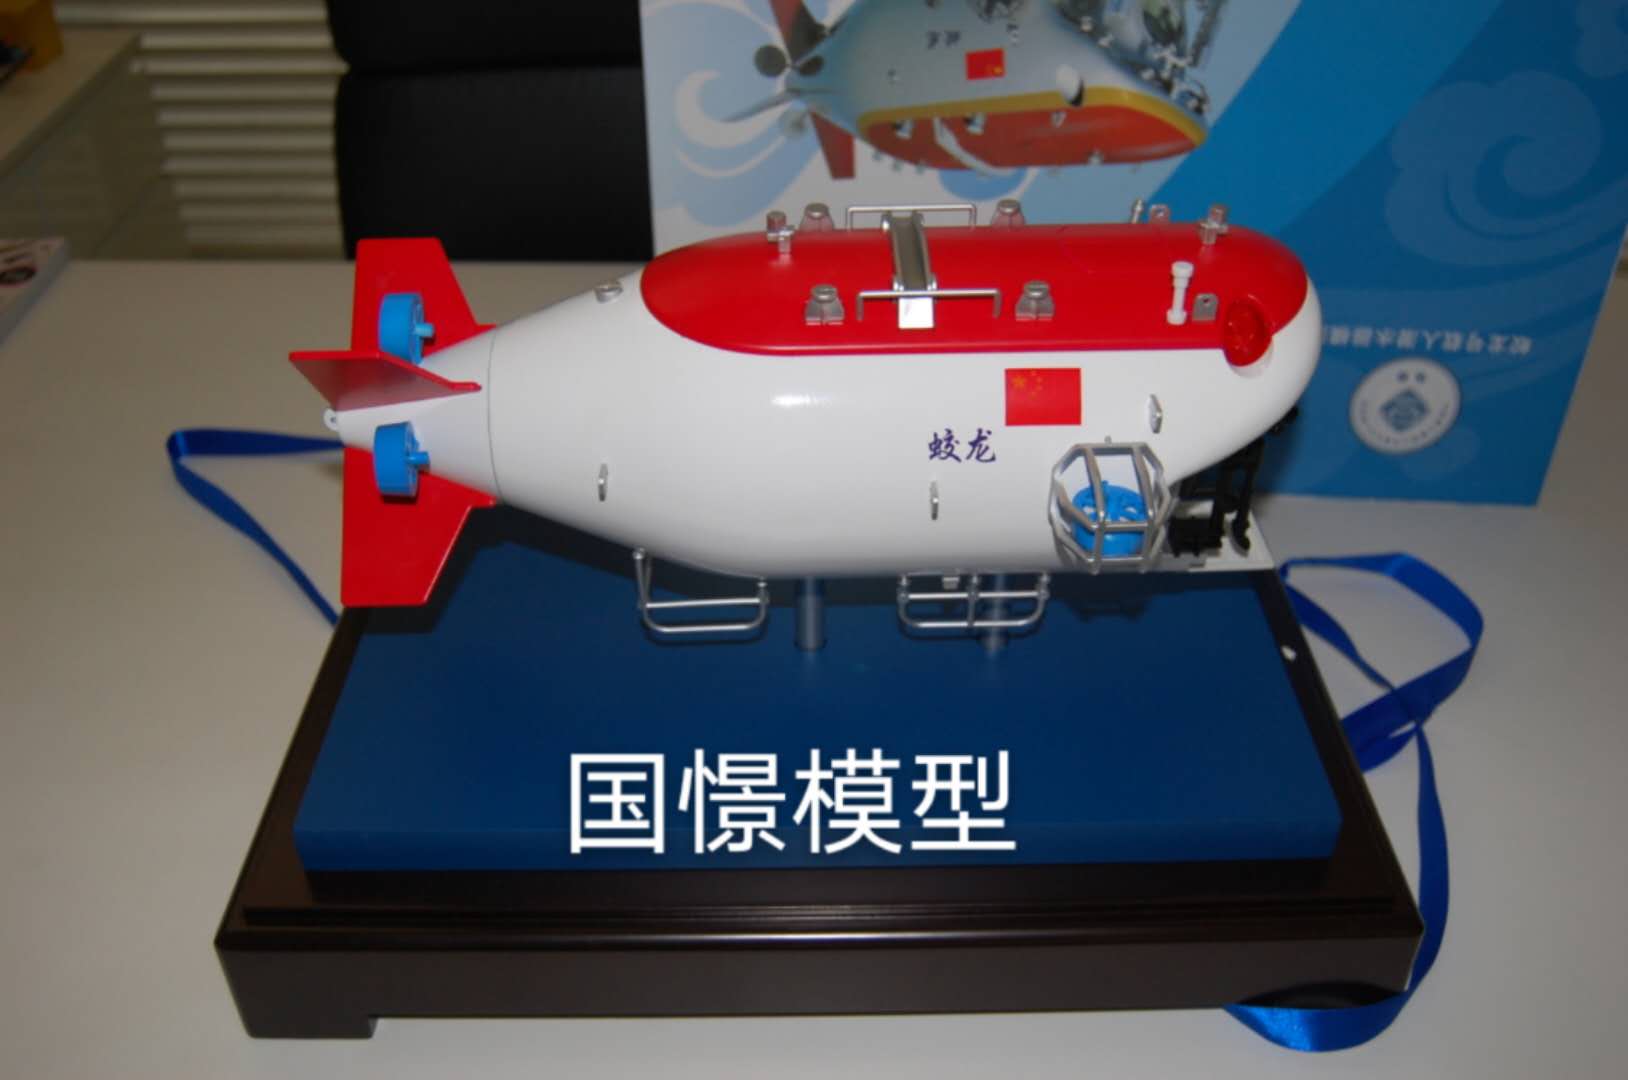 广灵县船舶模型